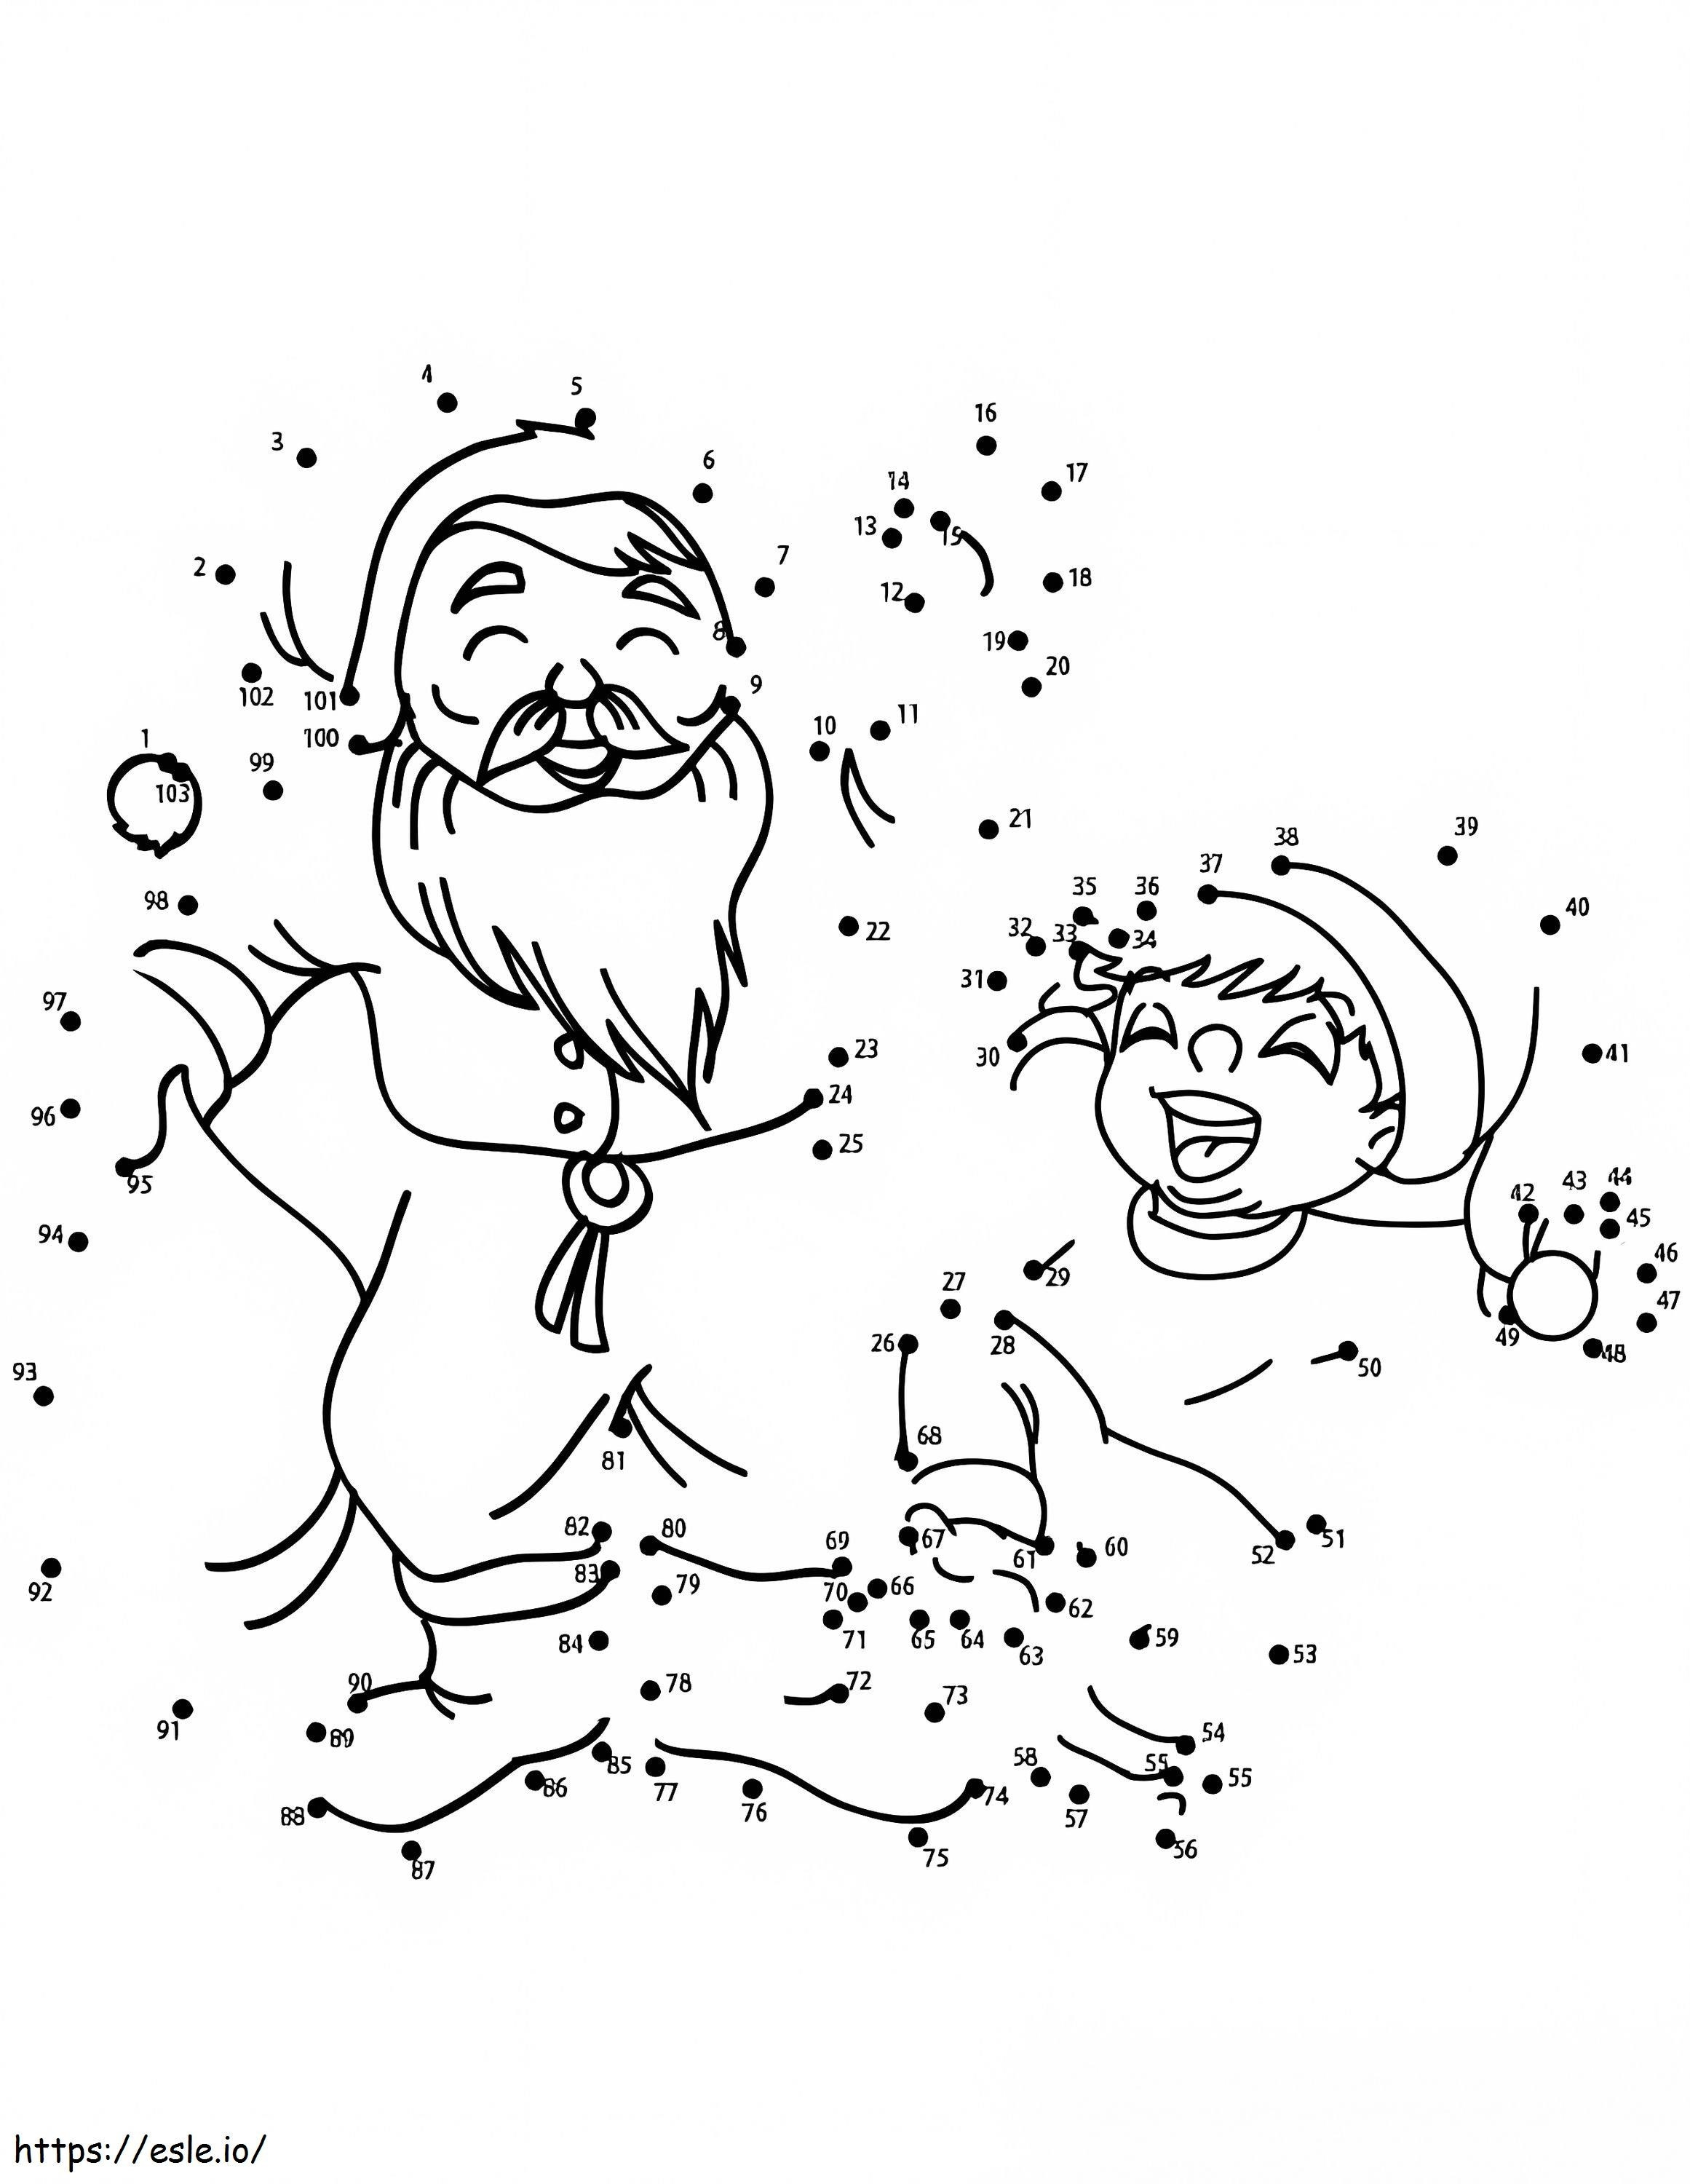 Coloriage Garçon et père Noël point à point à imprimer dessin